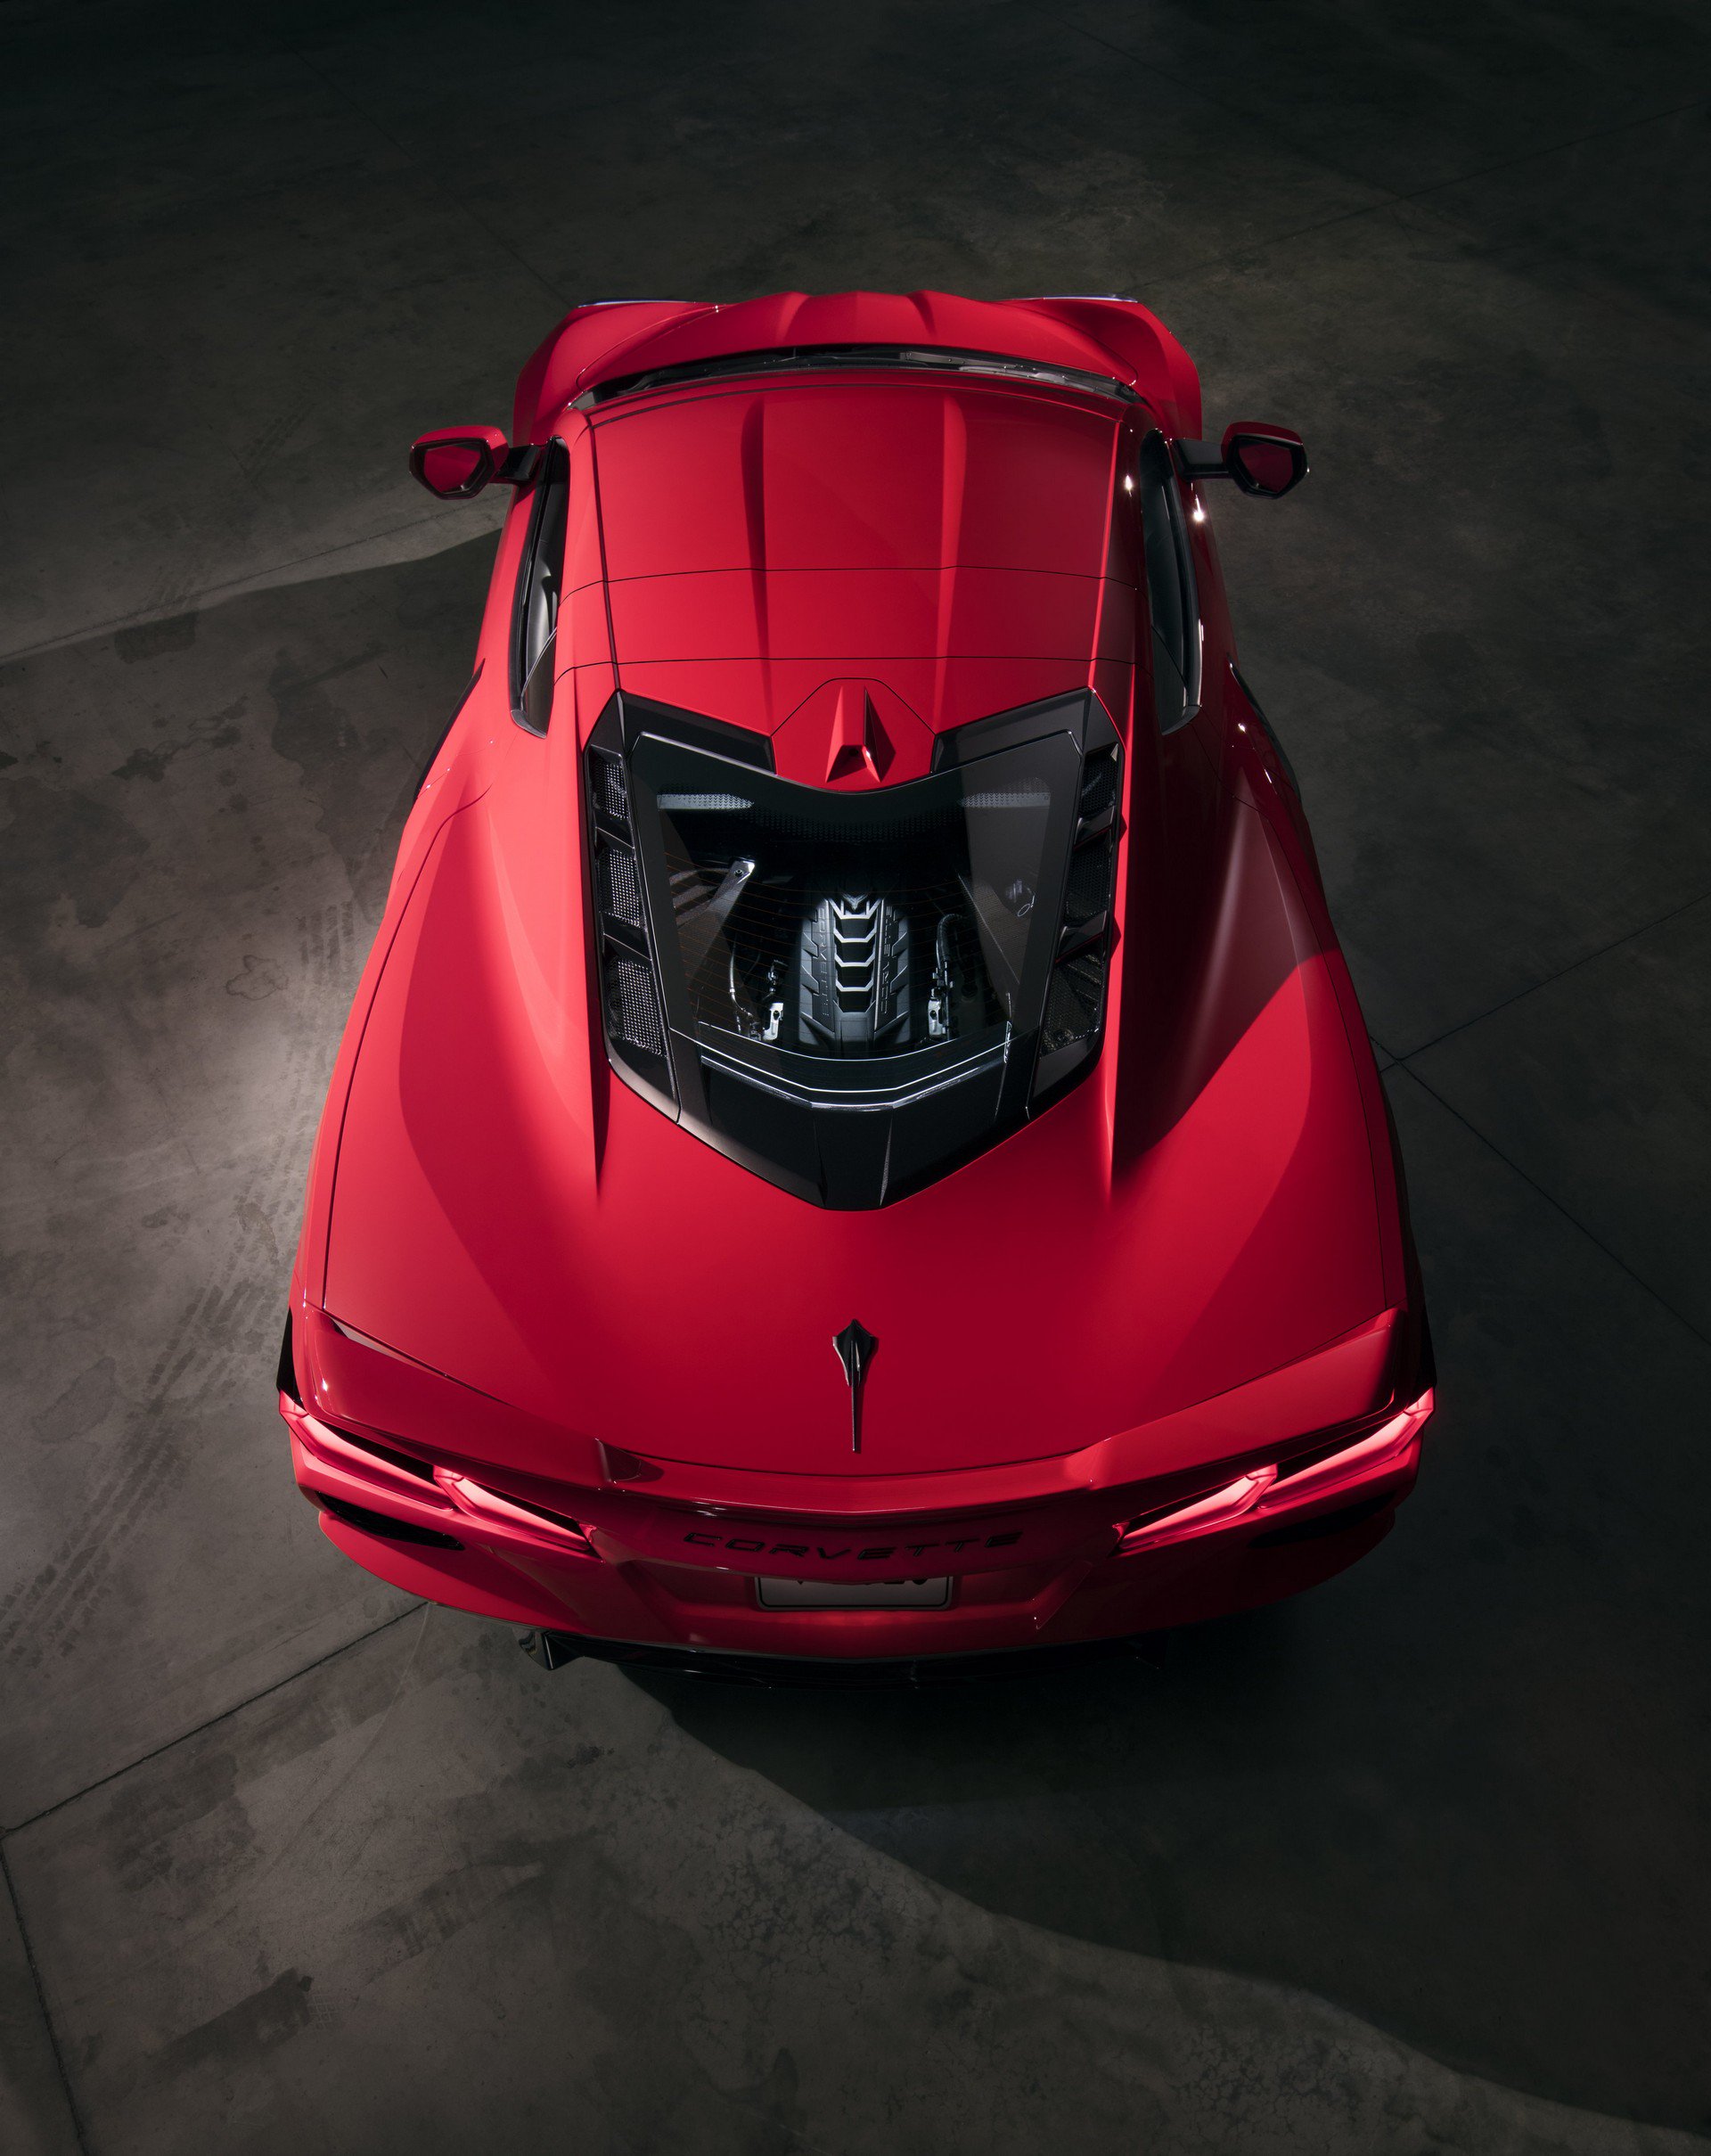 490 beygirlik yeni Corvette Stingray tanıtıldı: Ortadan motorlu ilk Corvette